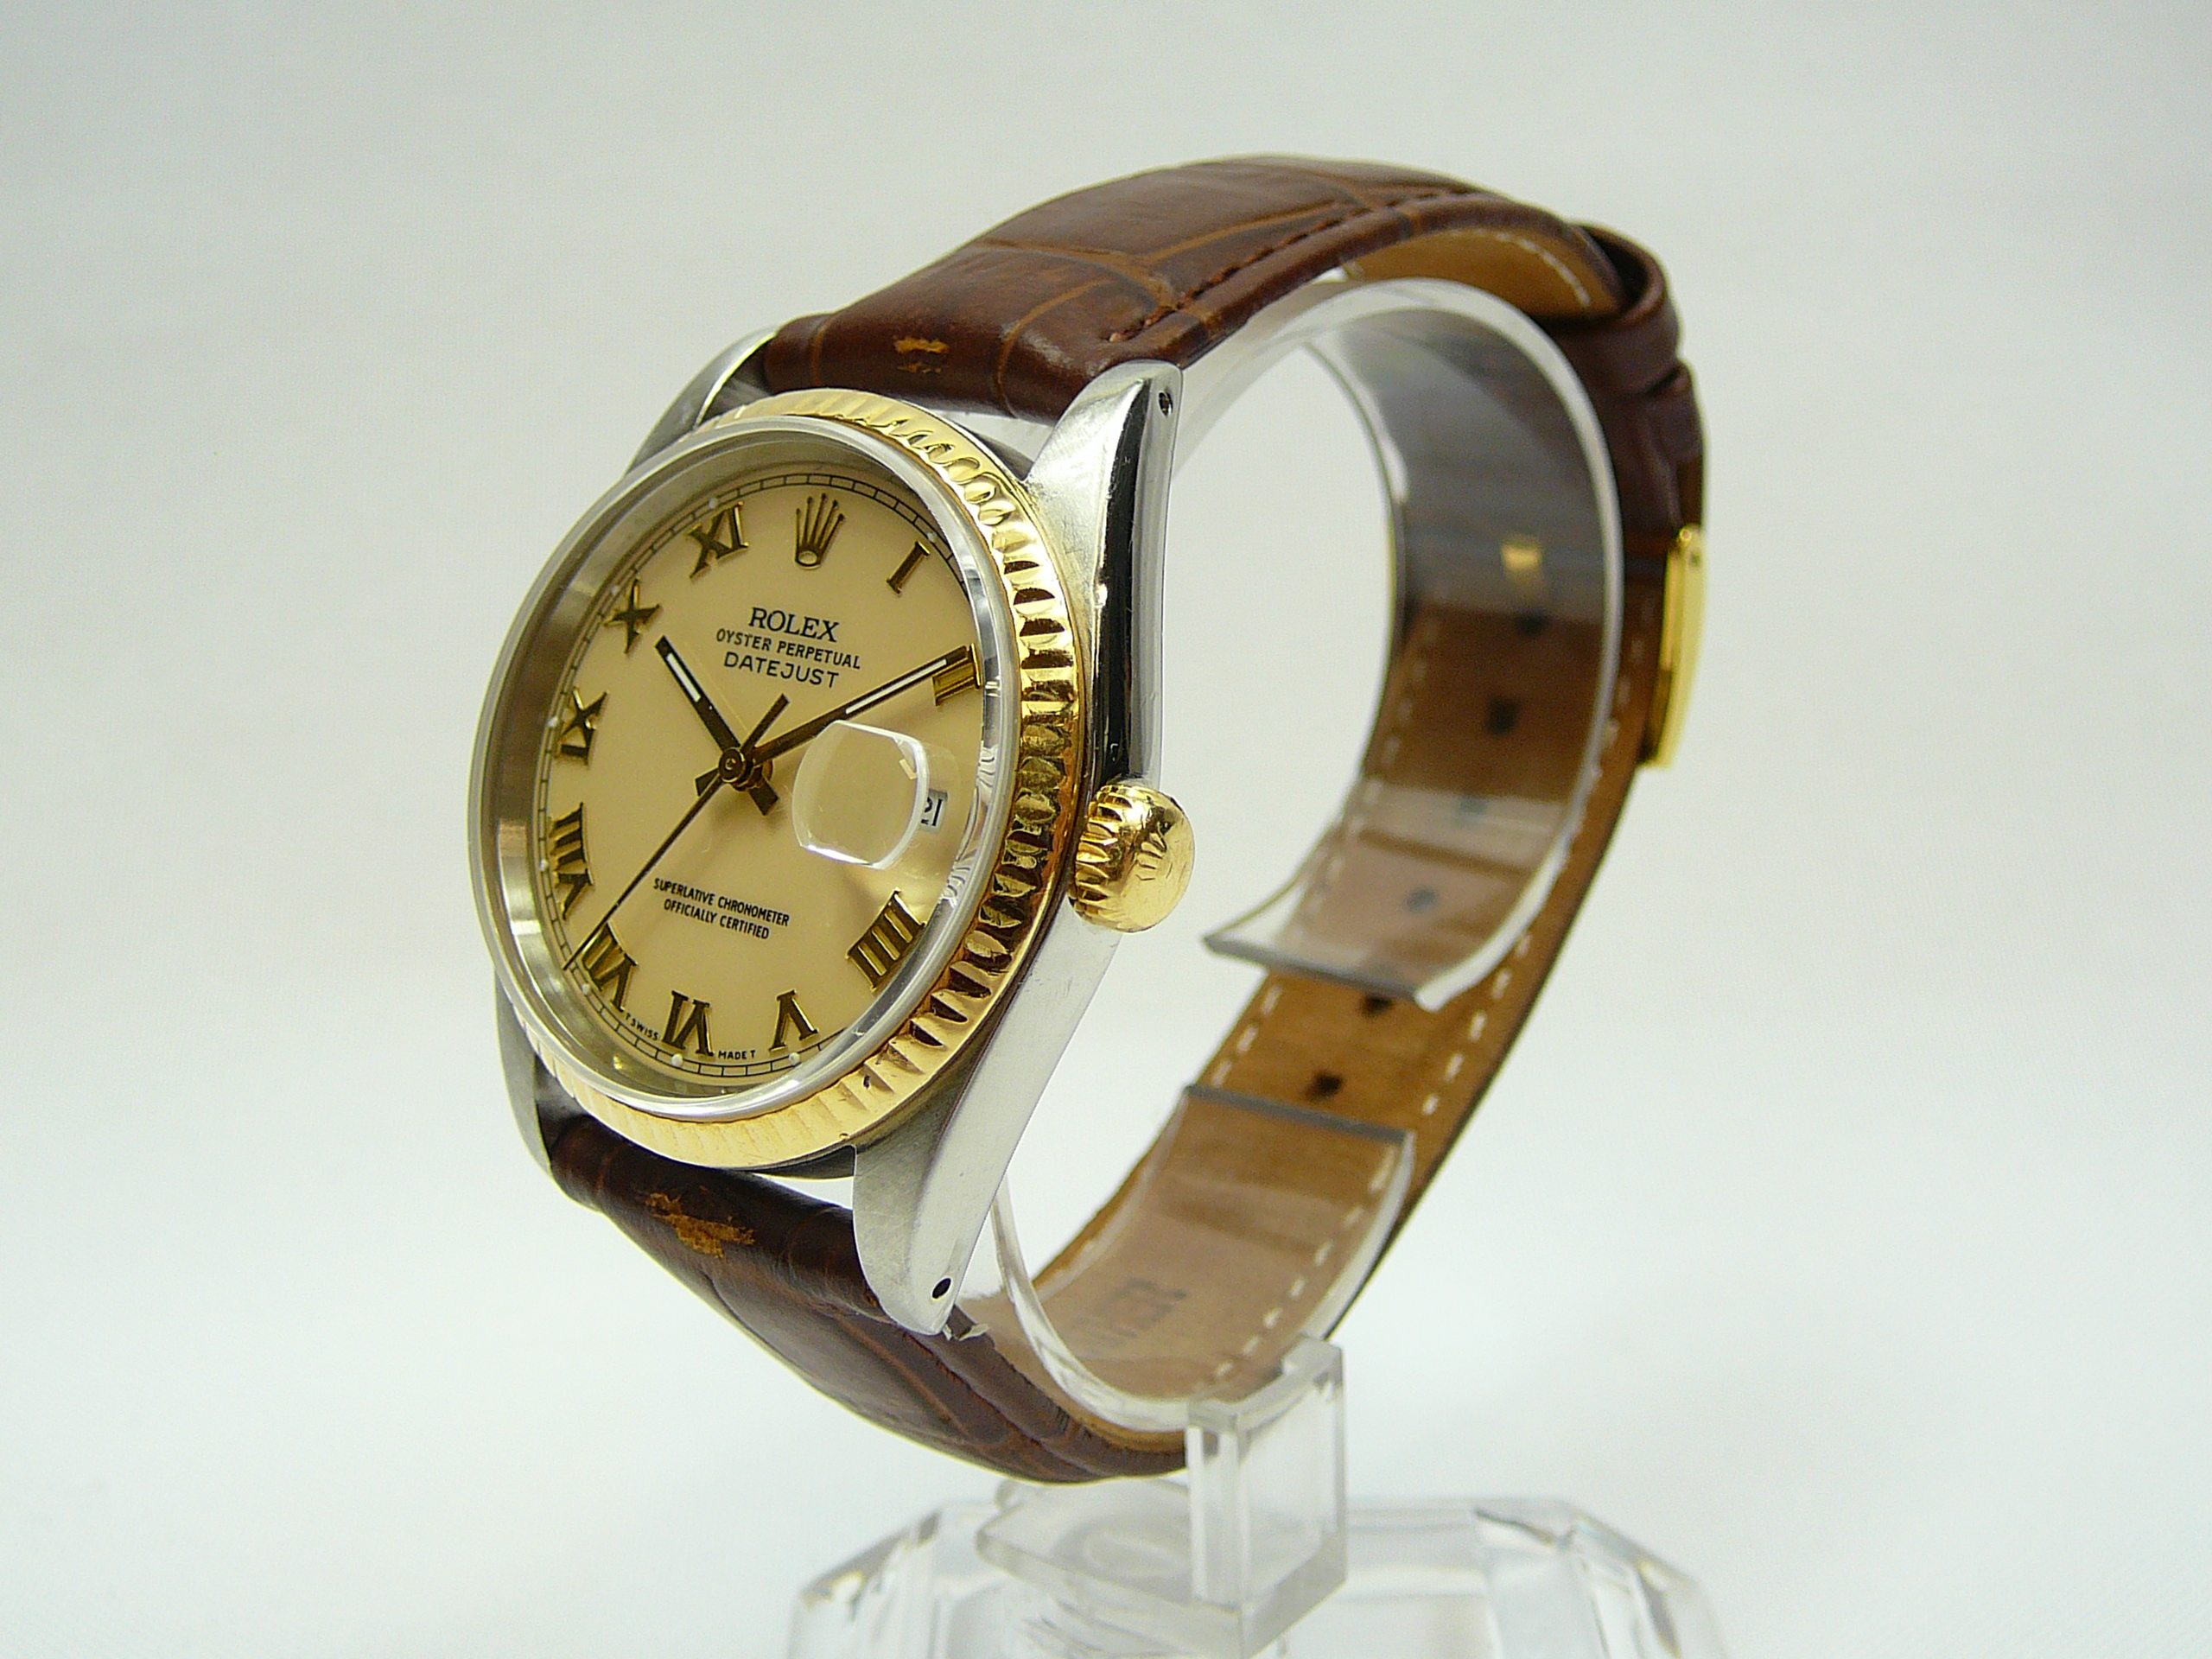 Gents Rolex Wrist Watch - Image 3 of 5